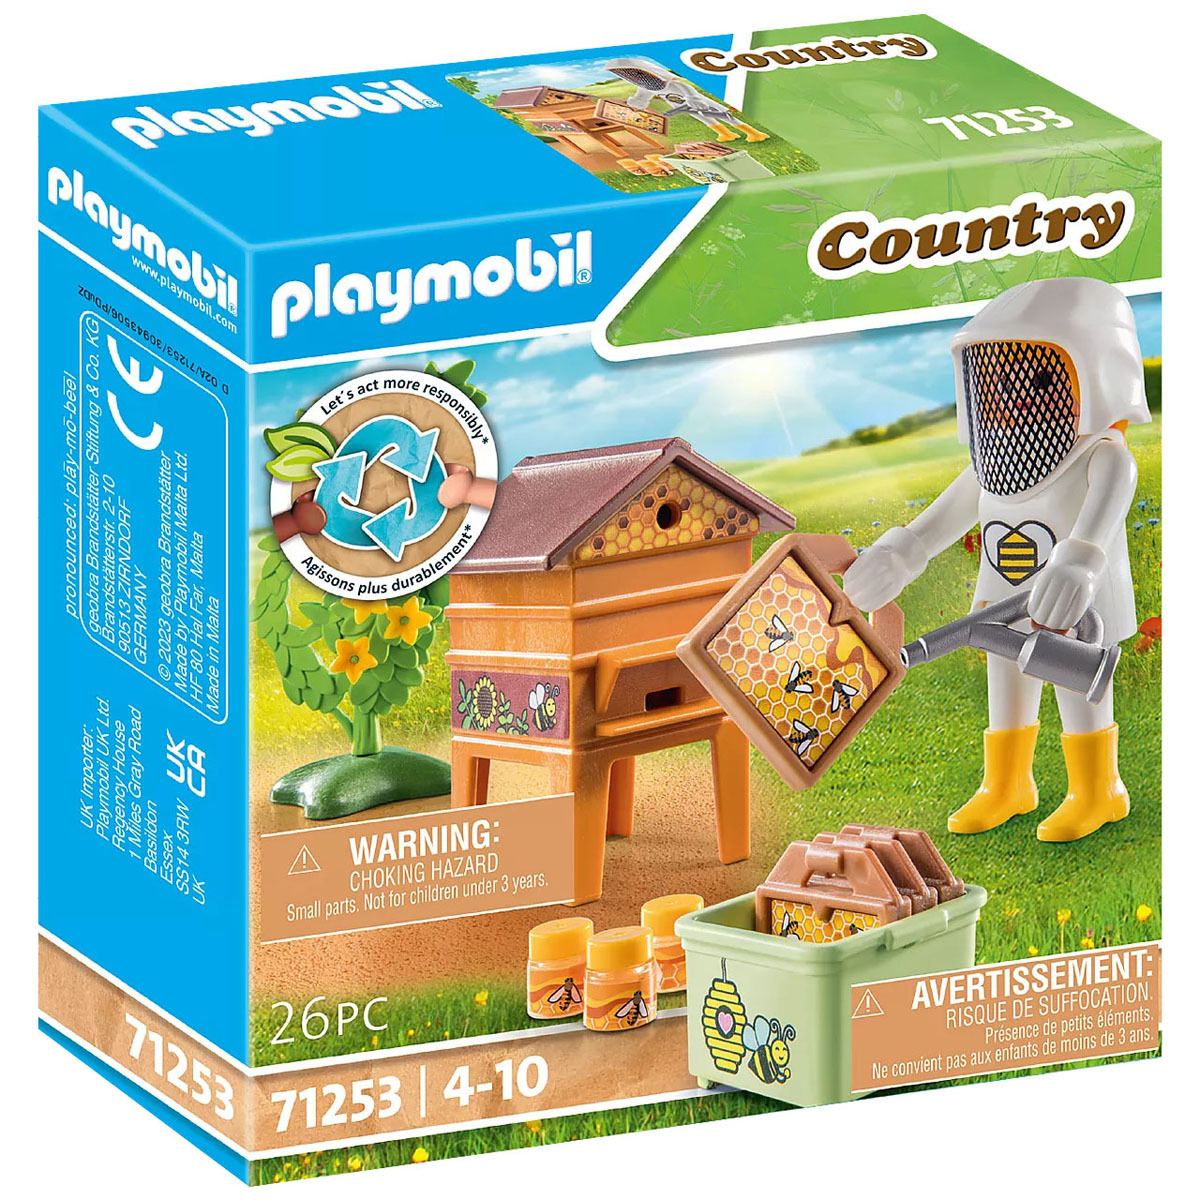 71190 - Playmobil Country - Ménagerie Playmobil : King Jouet